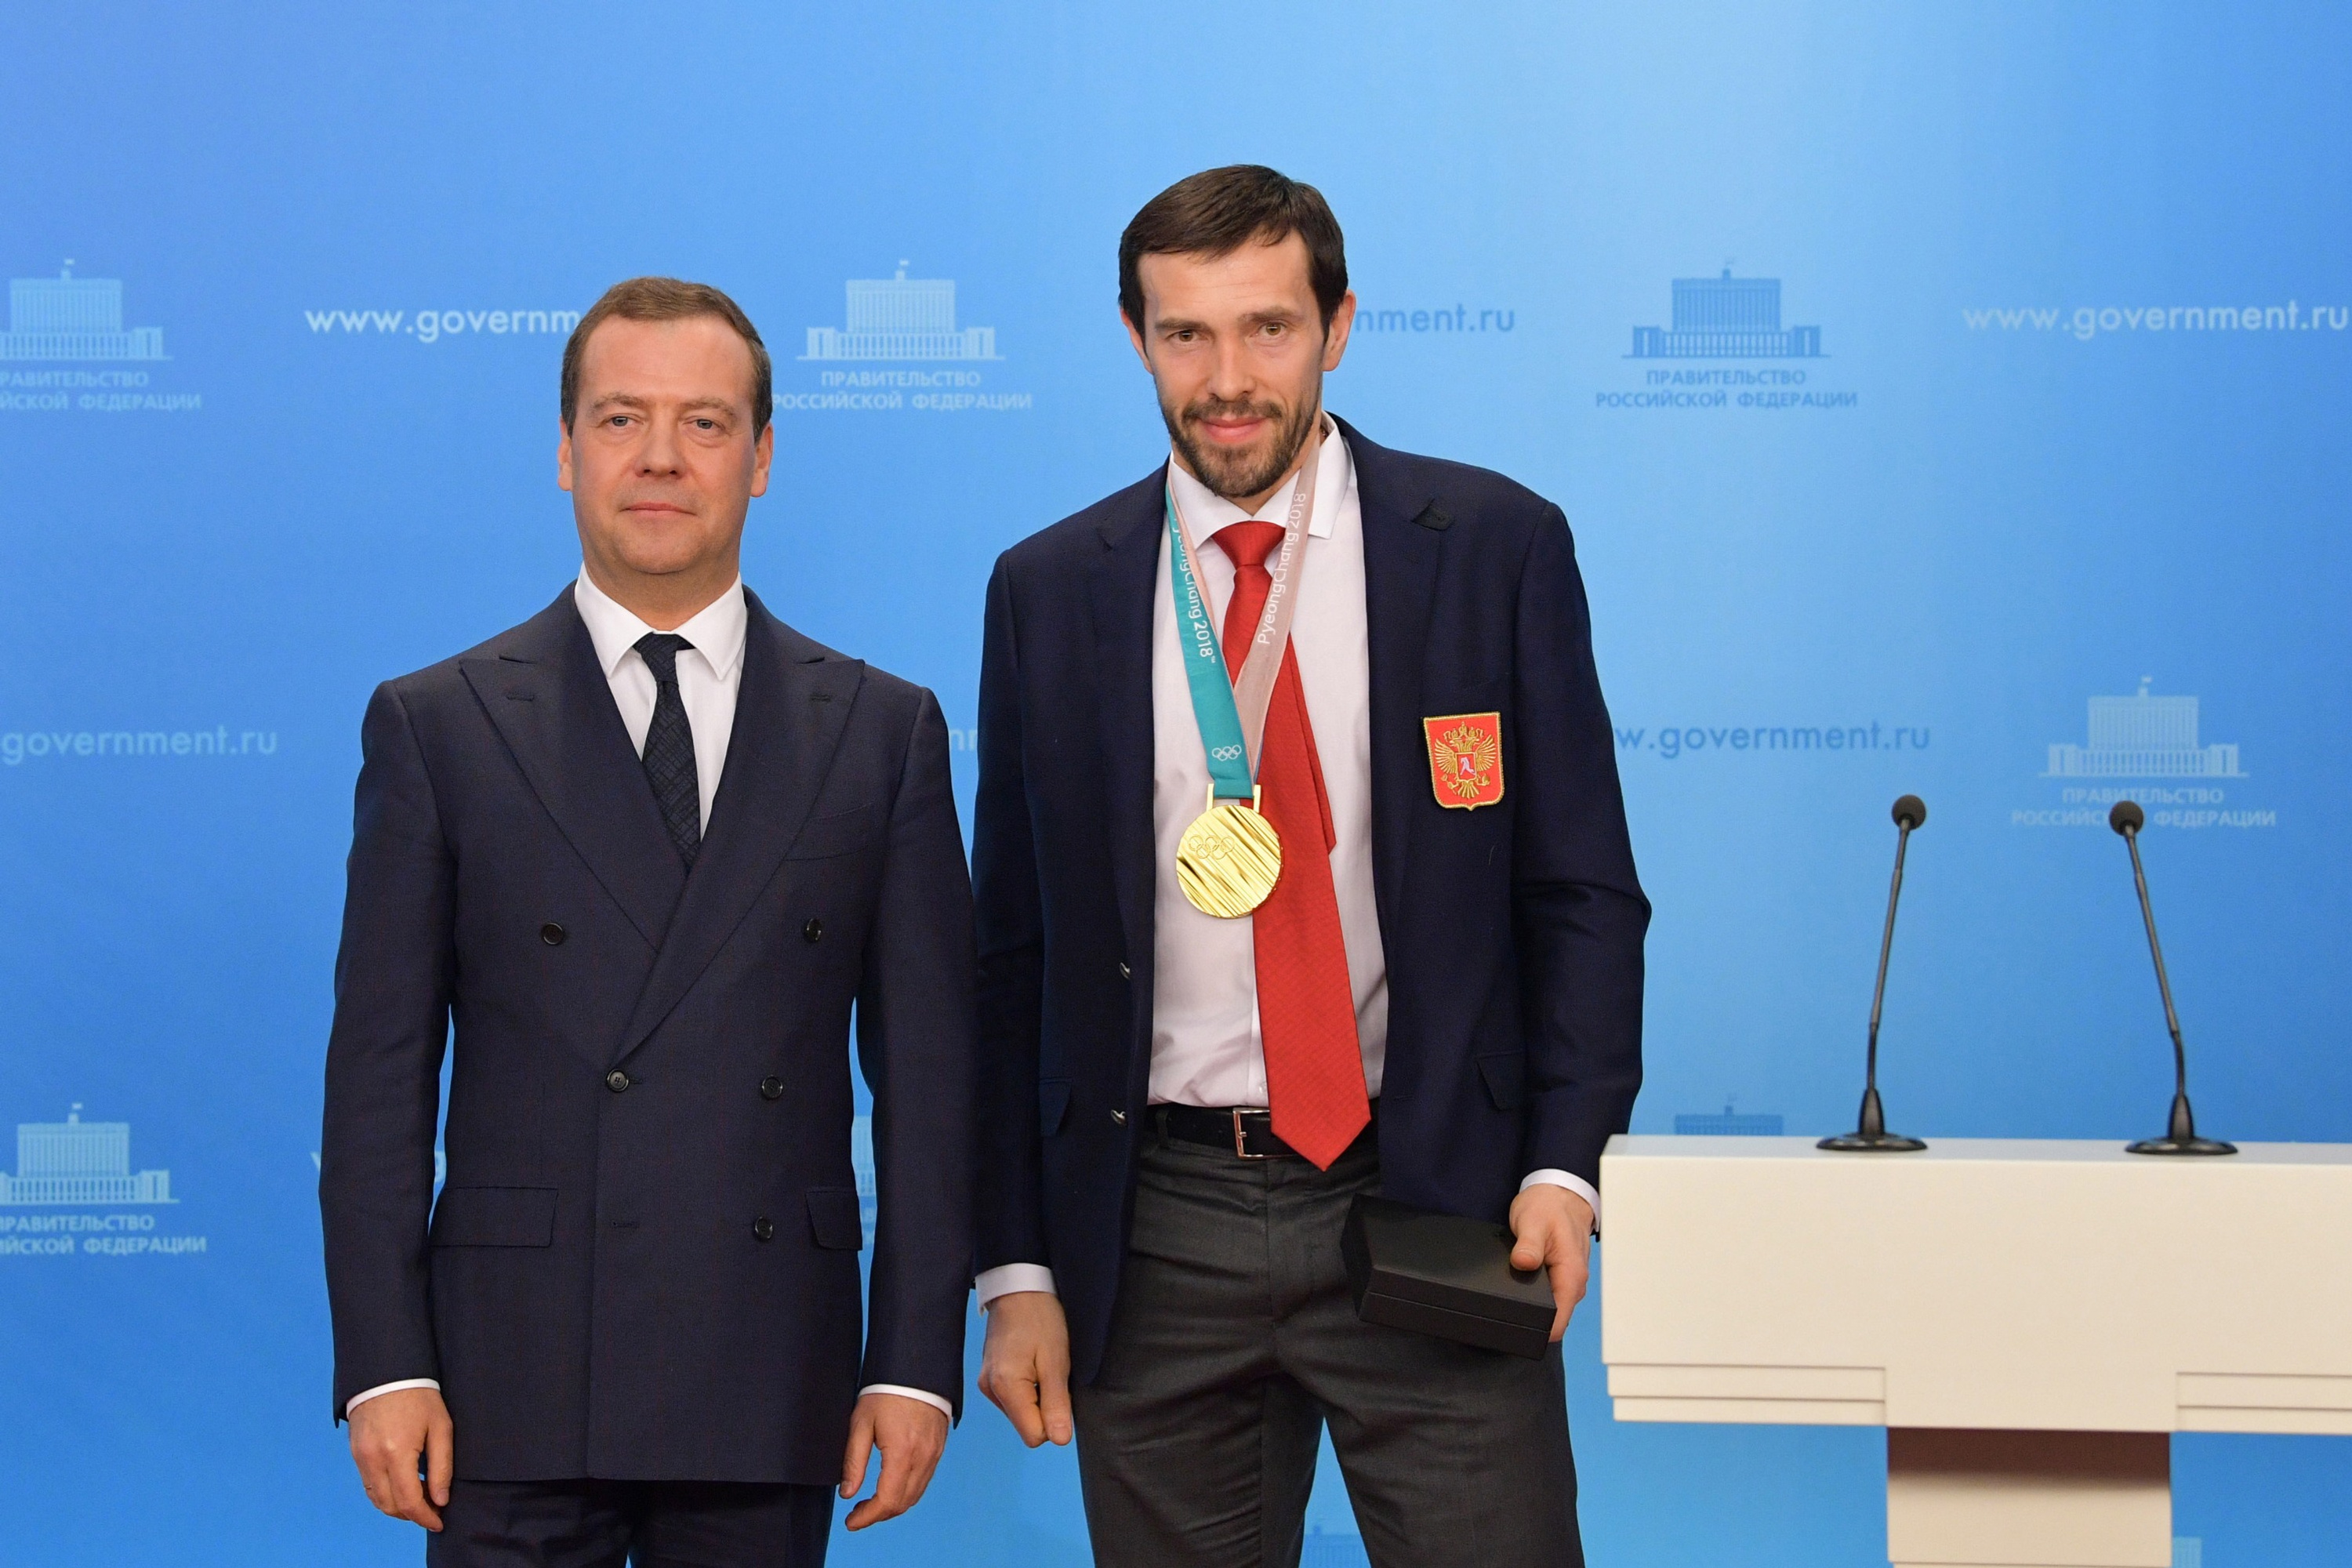 Ключи вручал Дмитрий Медведев, но почему-то не на улице, а в помещении